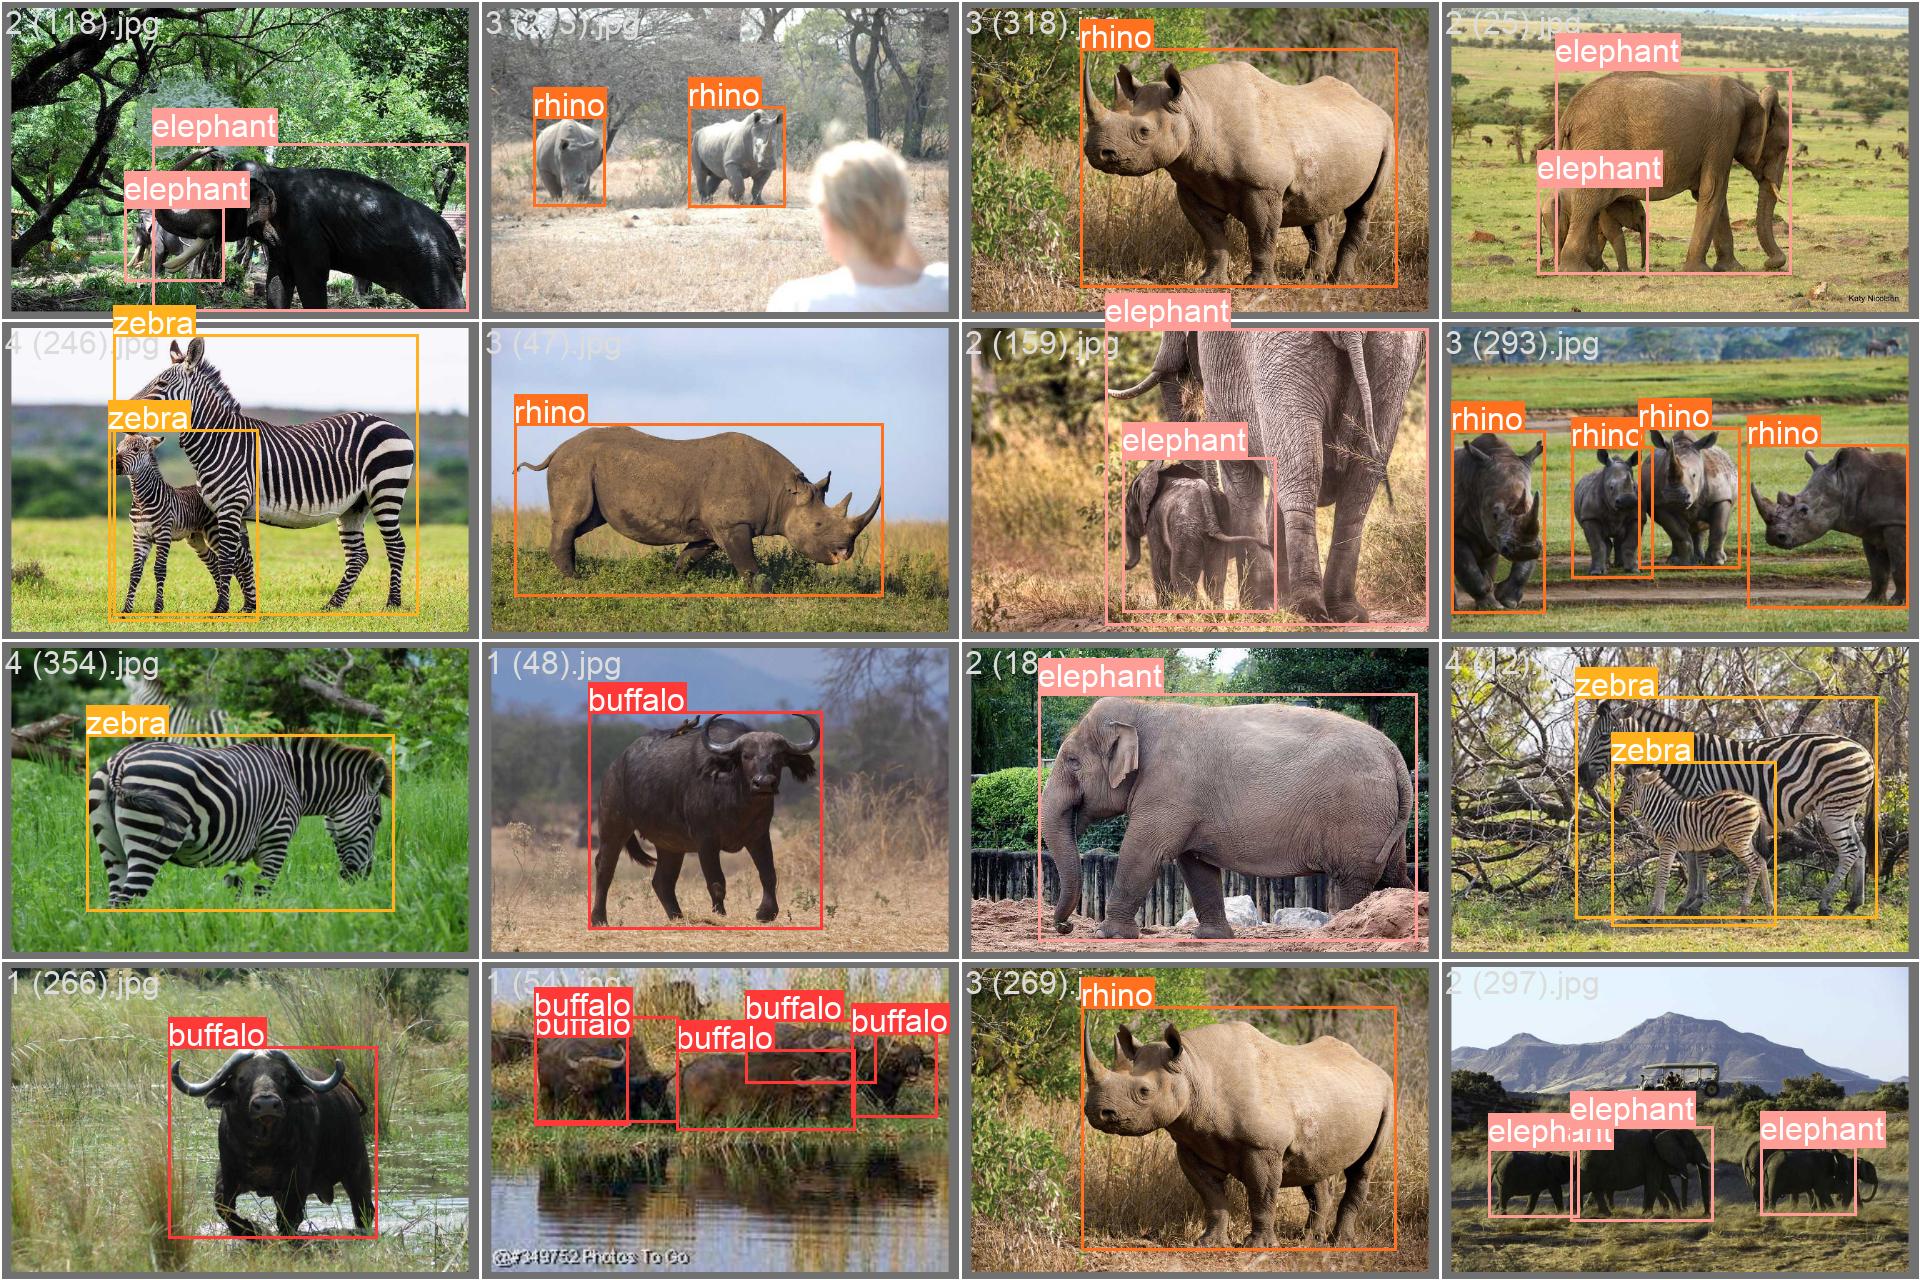 Образец изображения из набора данных о дикой природе Африки